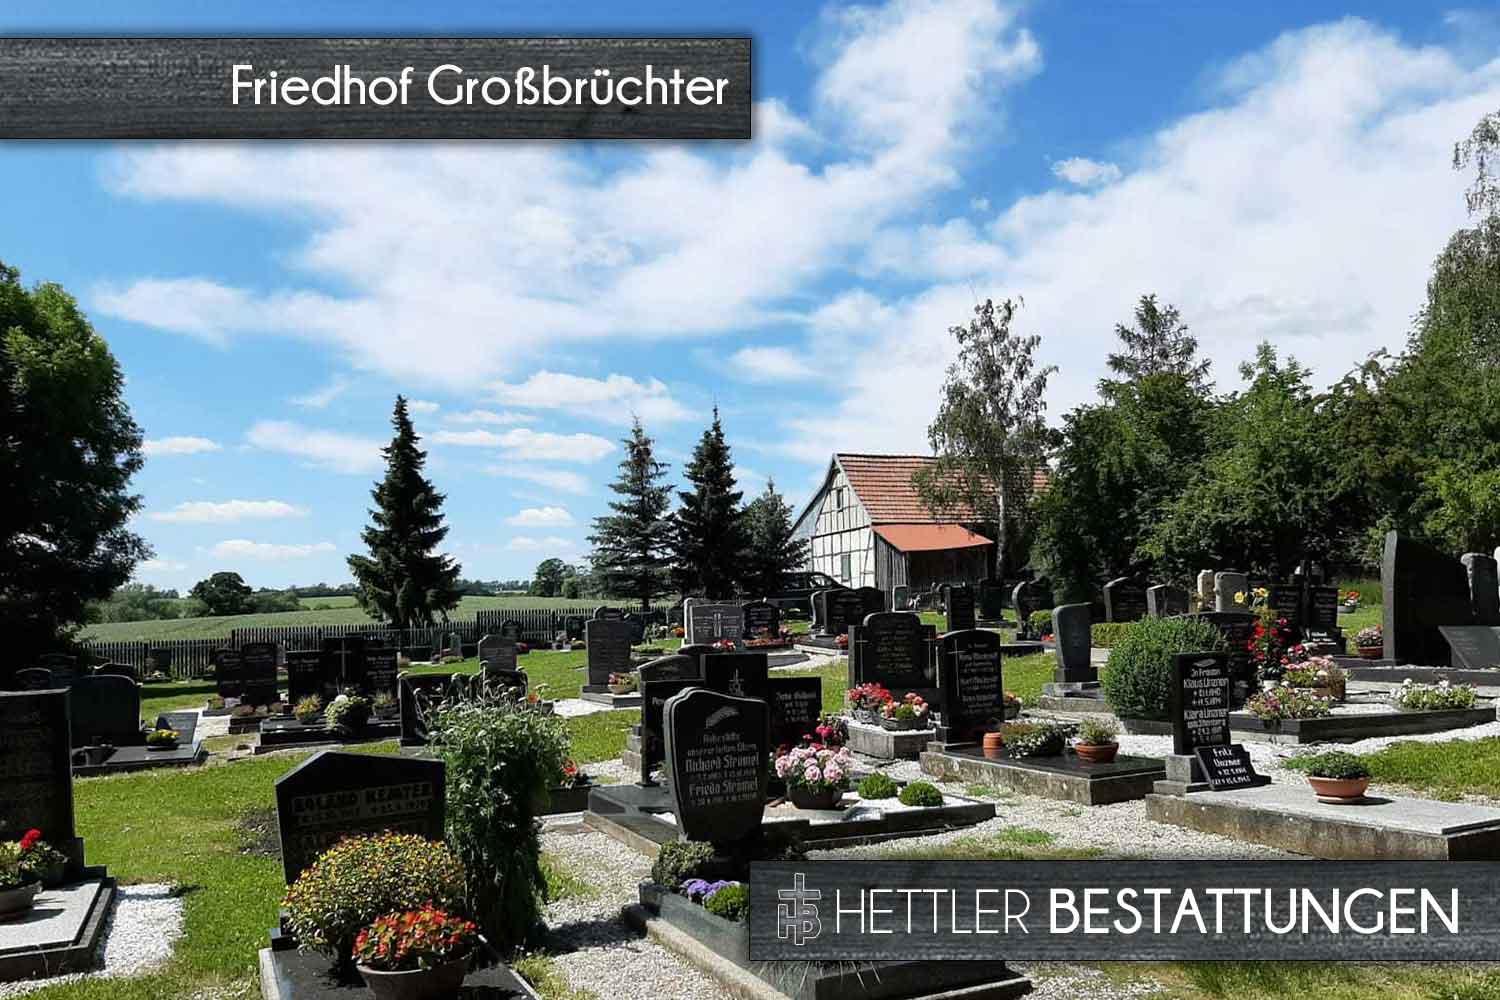 Friedhof in Großbrüchter. Ihr Ort des Abschieds mit Hettler Bestattungen.